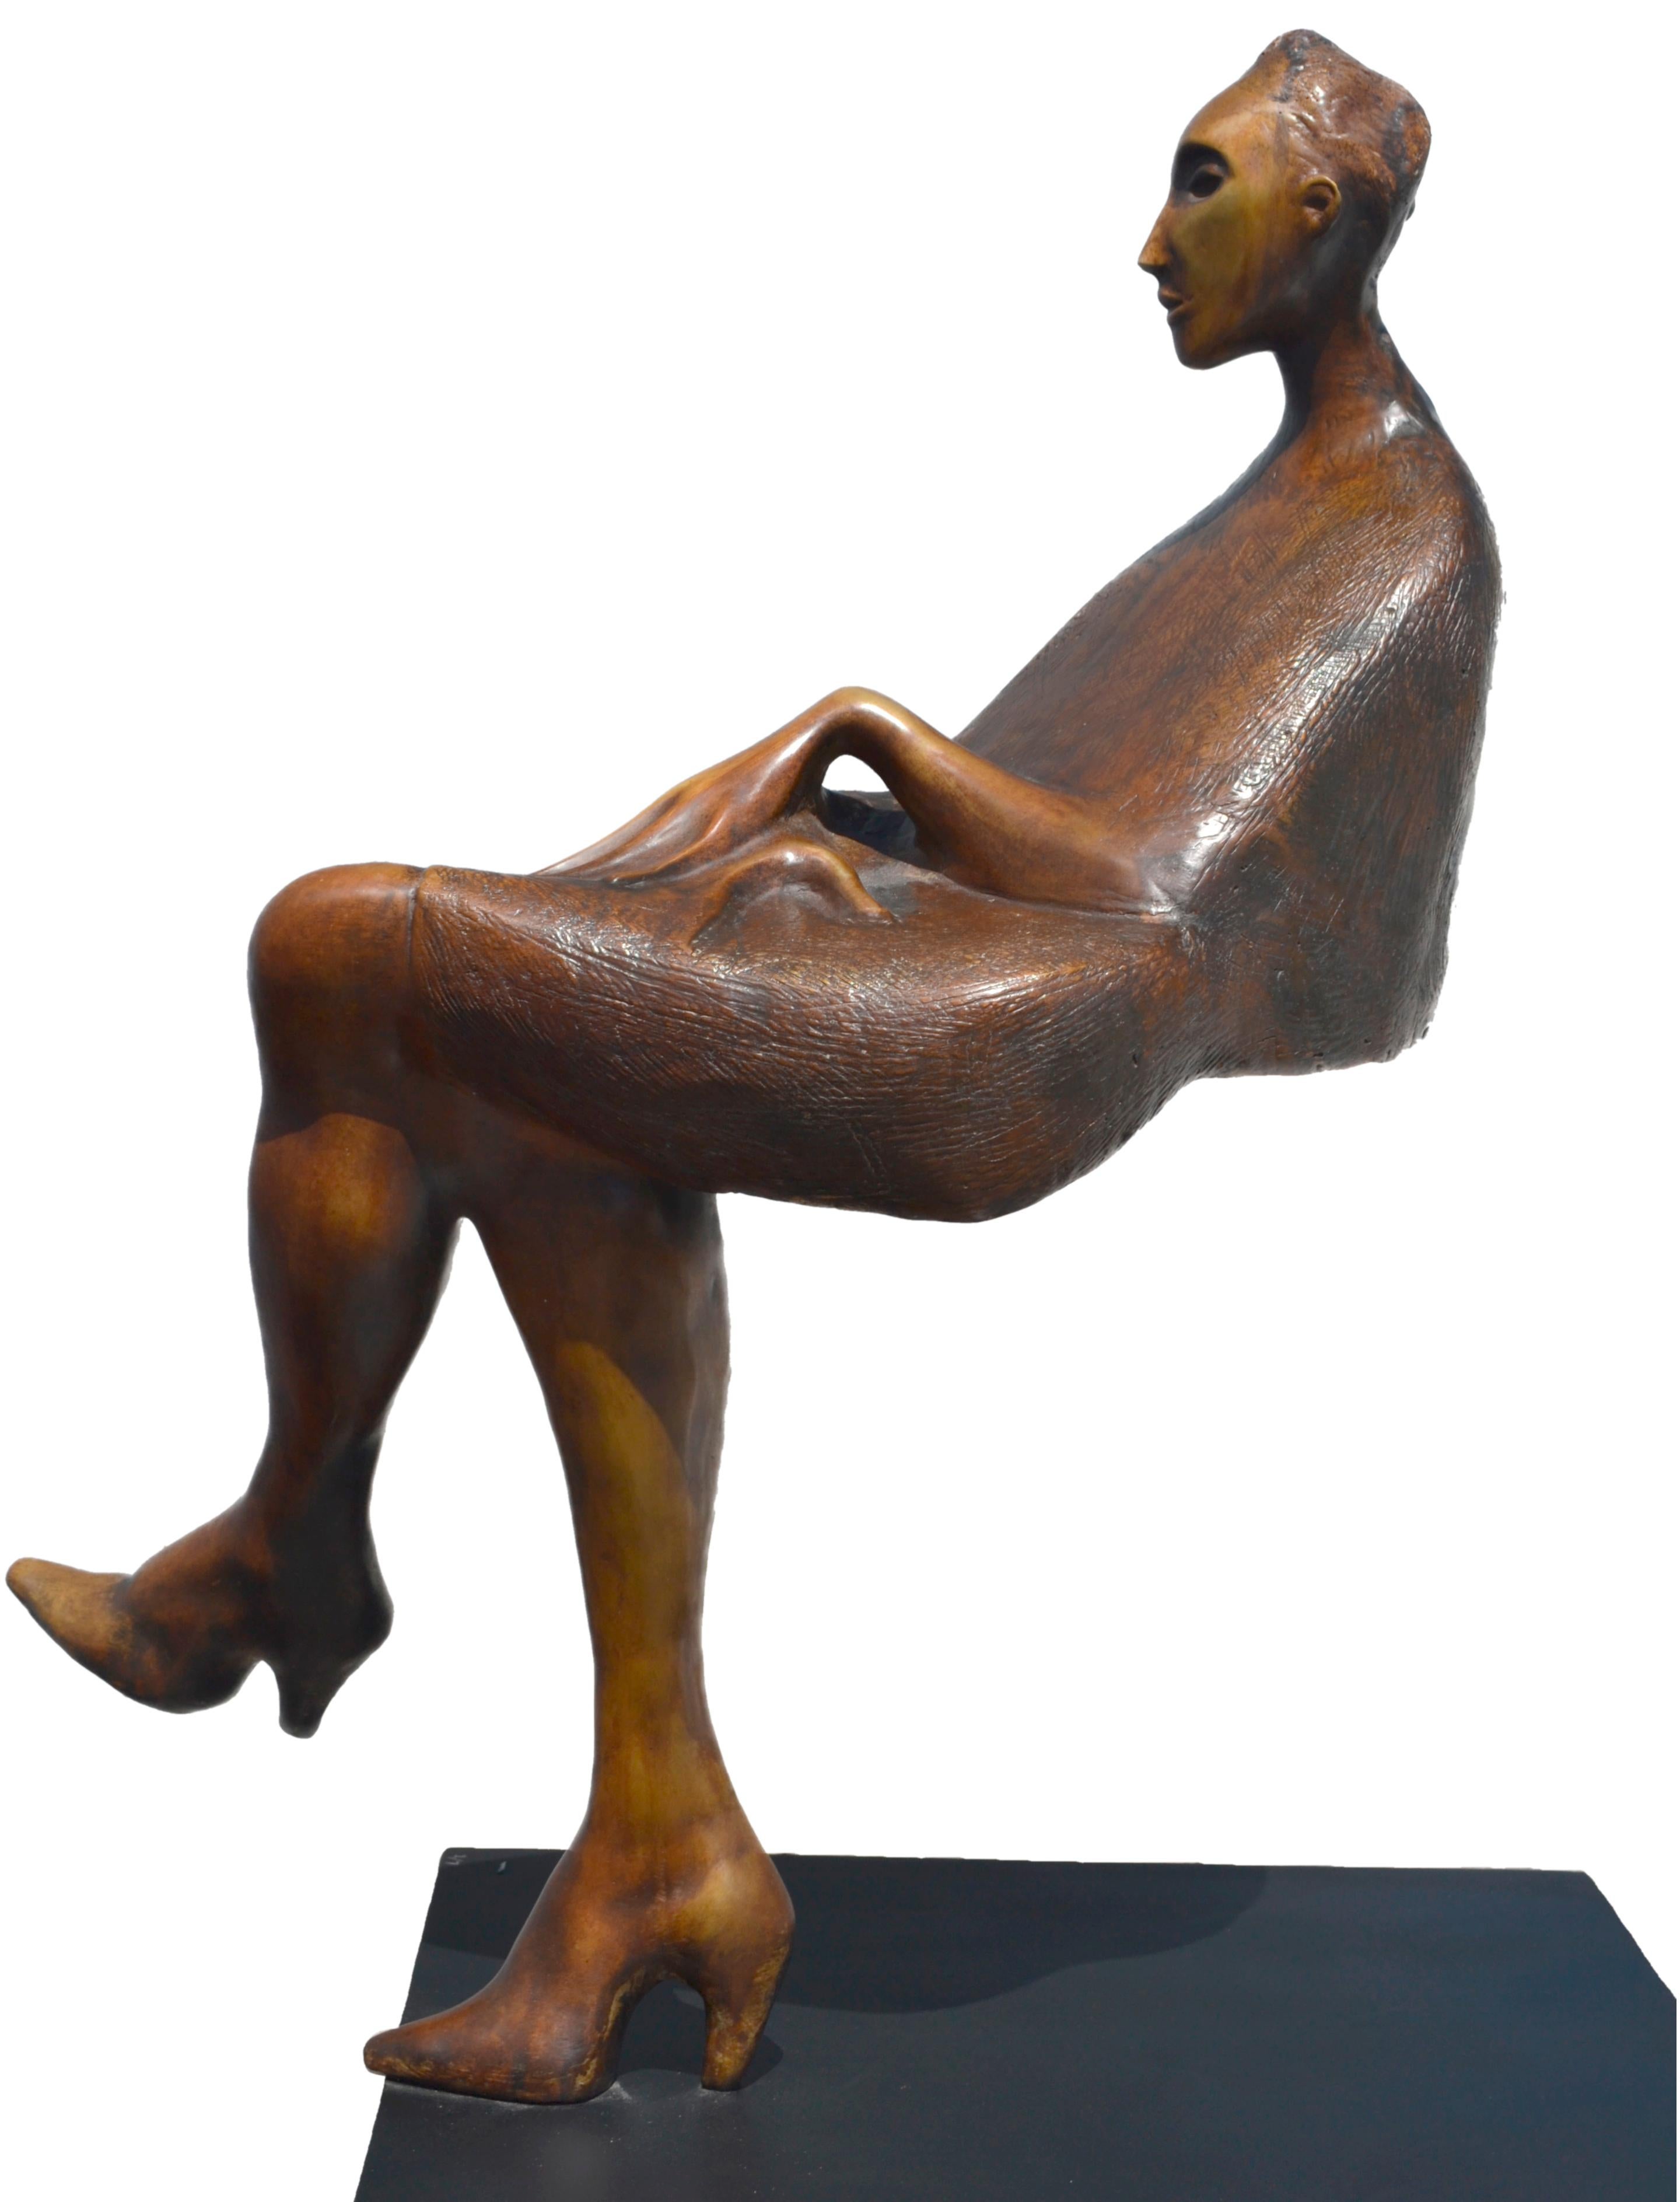  Jorge Segu,  Ilusion silla, 2000, Bronze, Auflage von 7, 78 x 90 x 33 cm  (Gold), Figurative Sculpture, von Jorge Seguí 